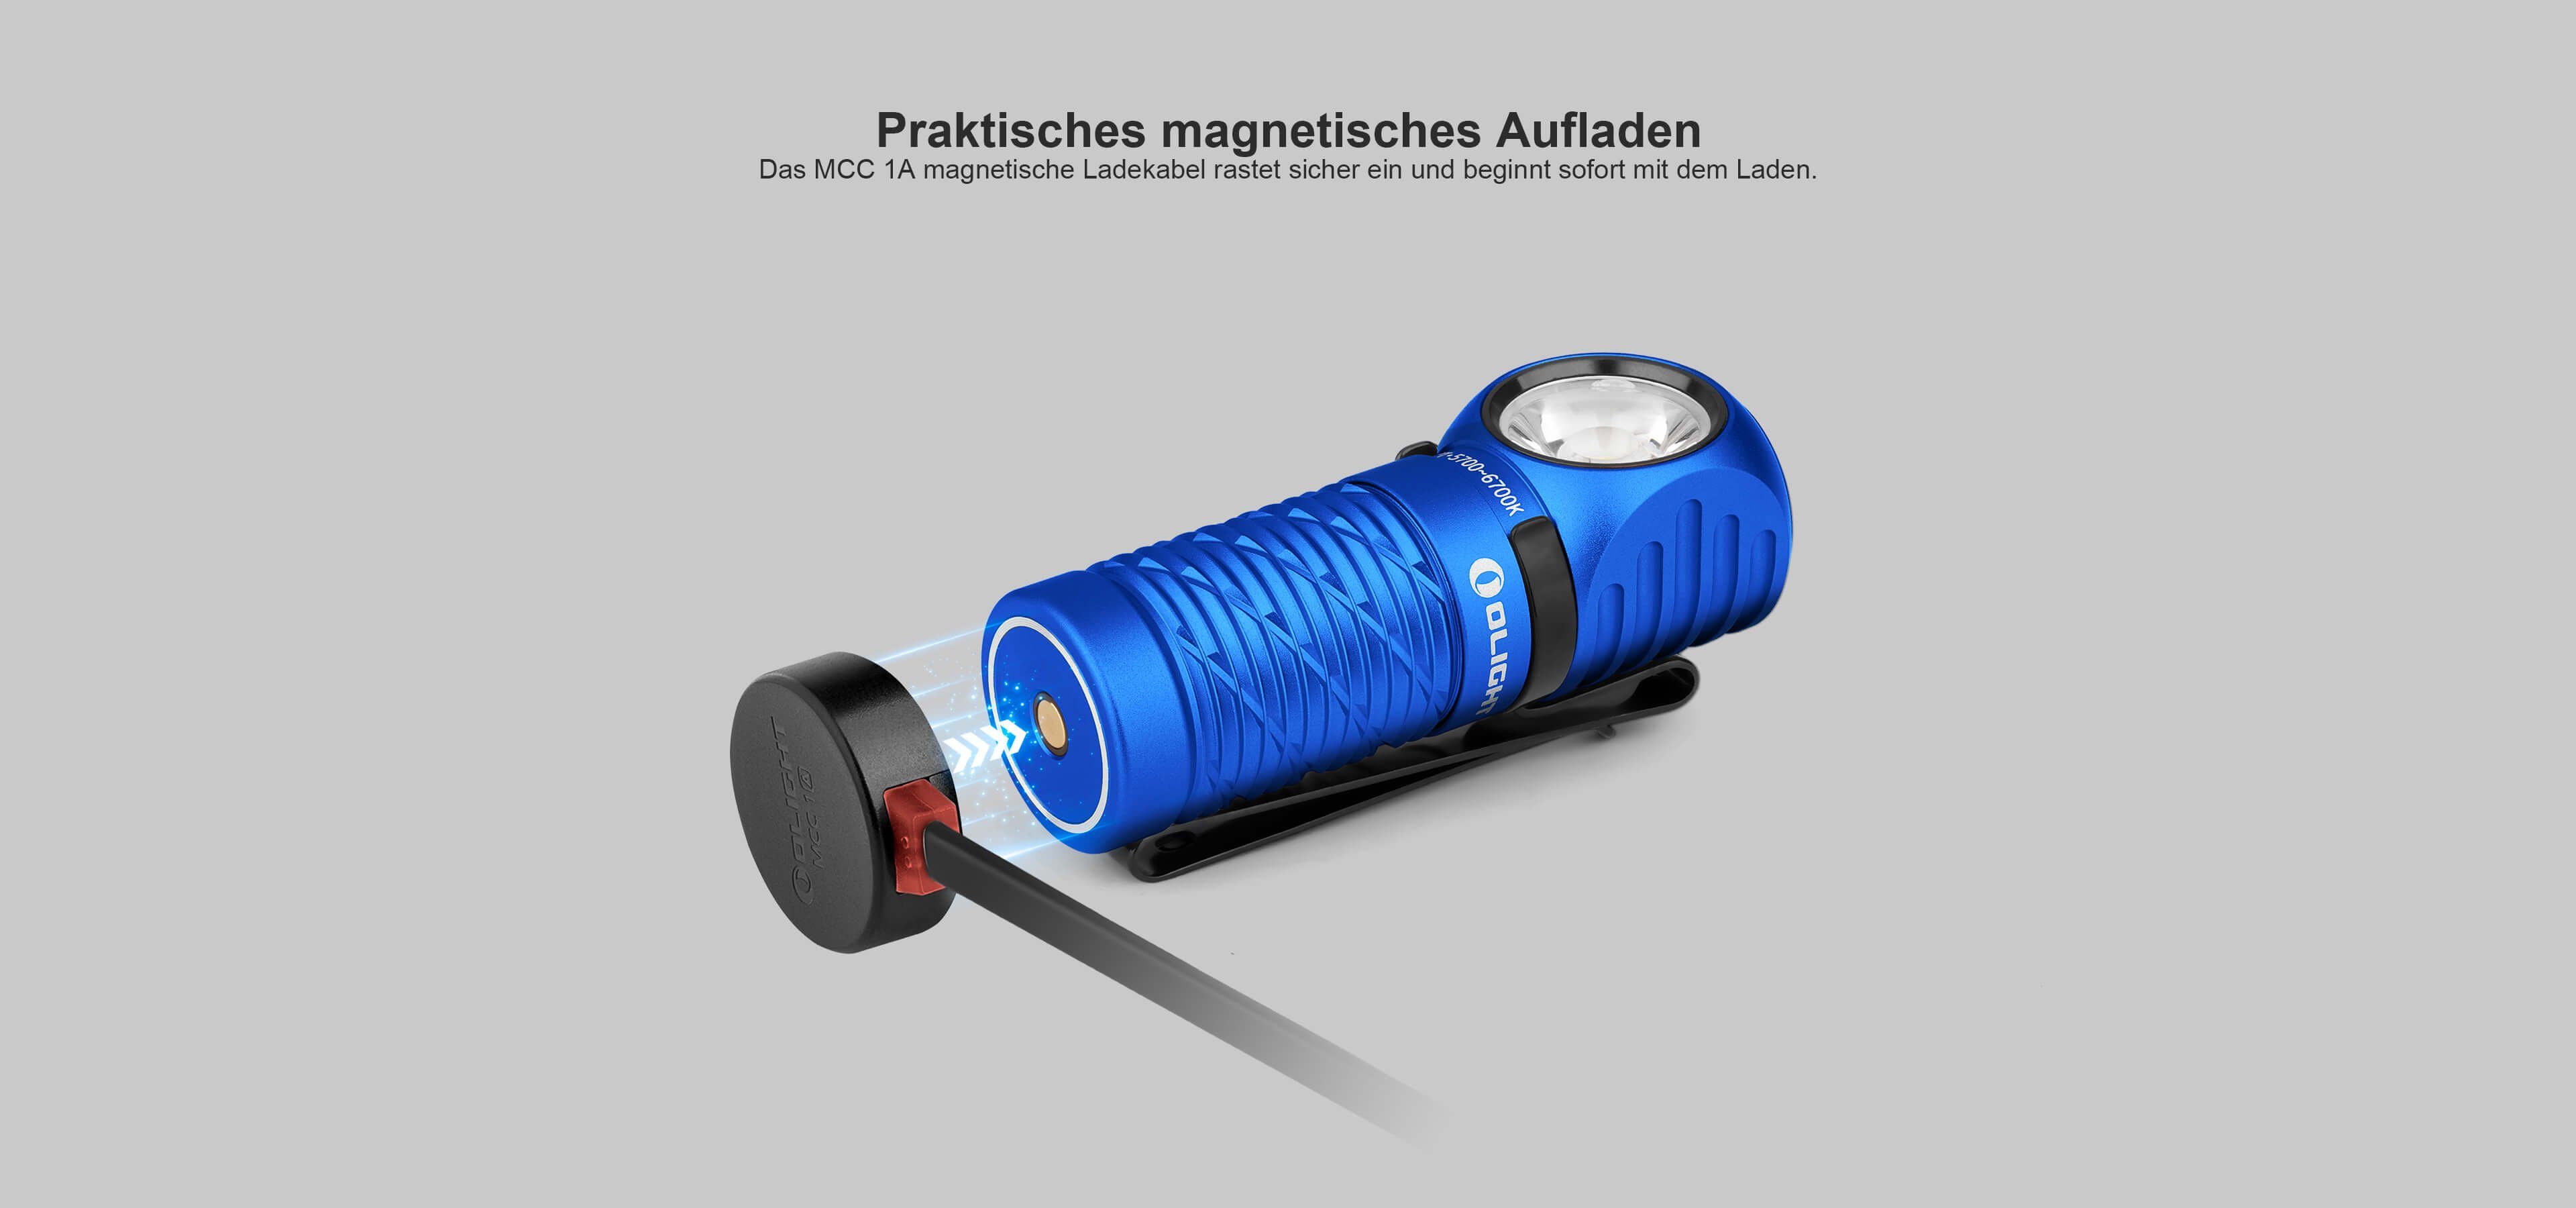 OLIGHT LED Taschenlampe Multifunktionslampe, 2 IPX8 Mini Perun Olight Nachtläufe, Campen für und Blau Wandern